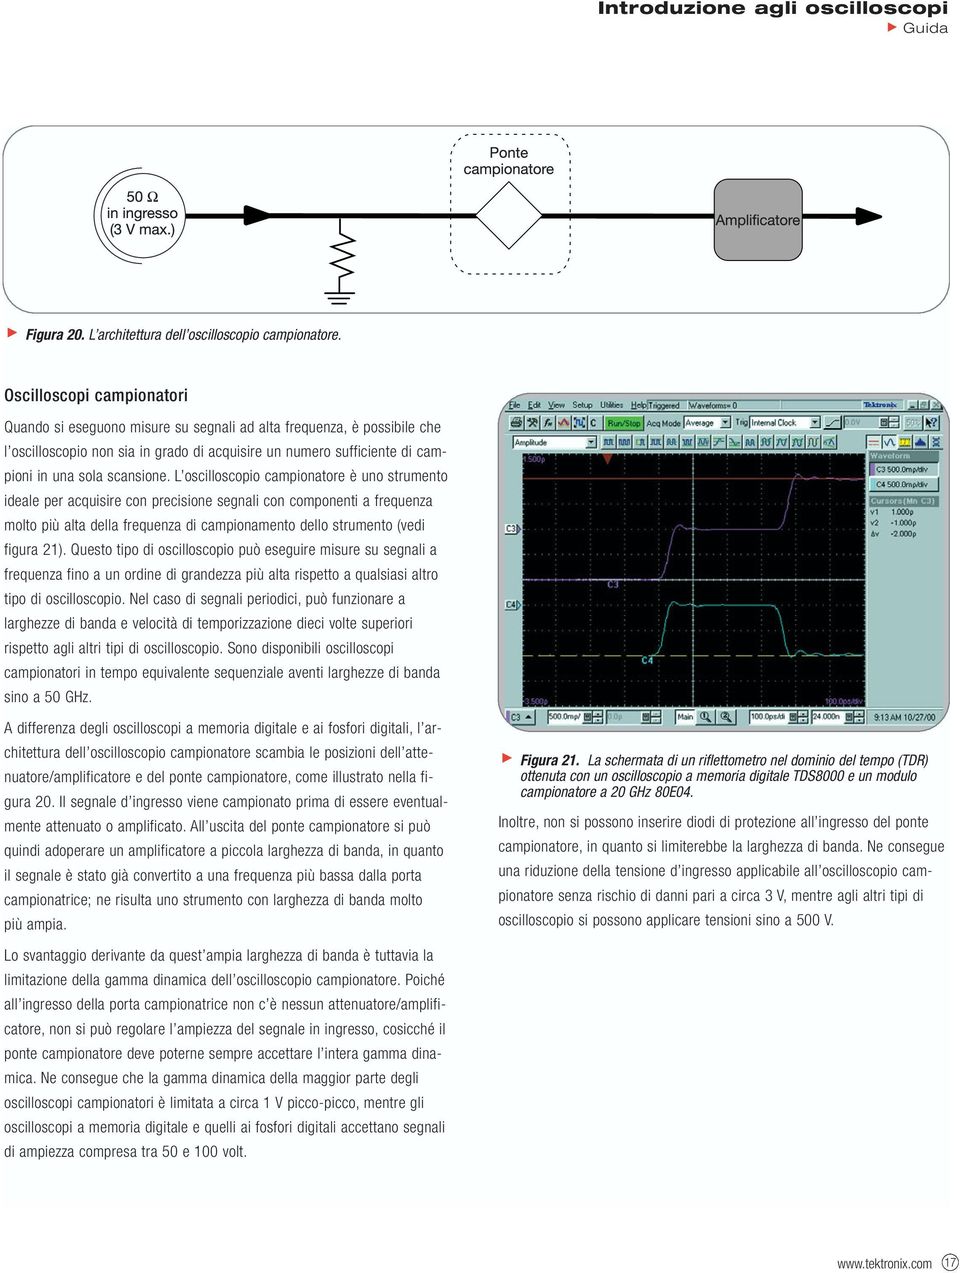 L oscilloscopio campionatore è uno strumento ideale per acquisire con precisione segnali con componenti a frequenza molto più alta della frequenza di campionamento dello strumento (vedi figura 21).